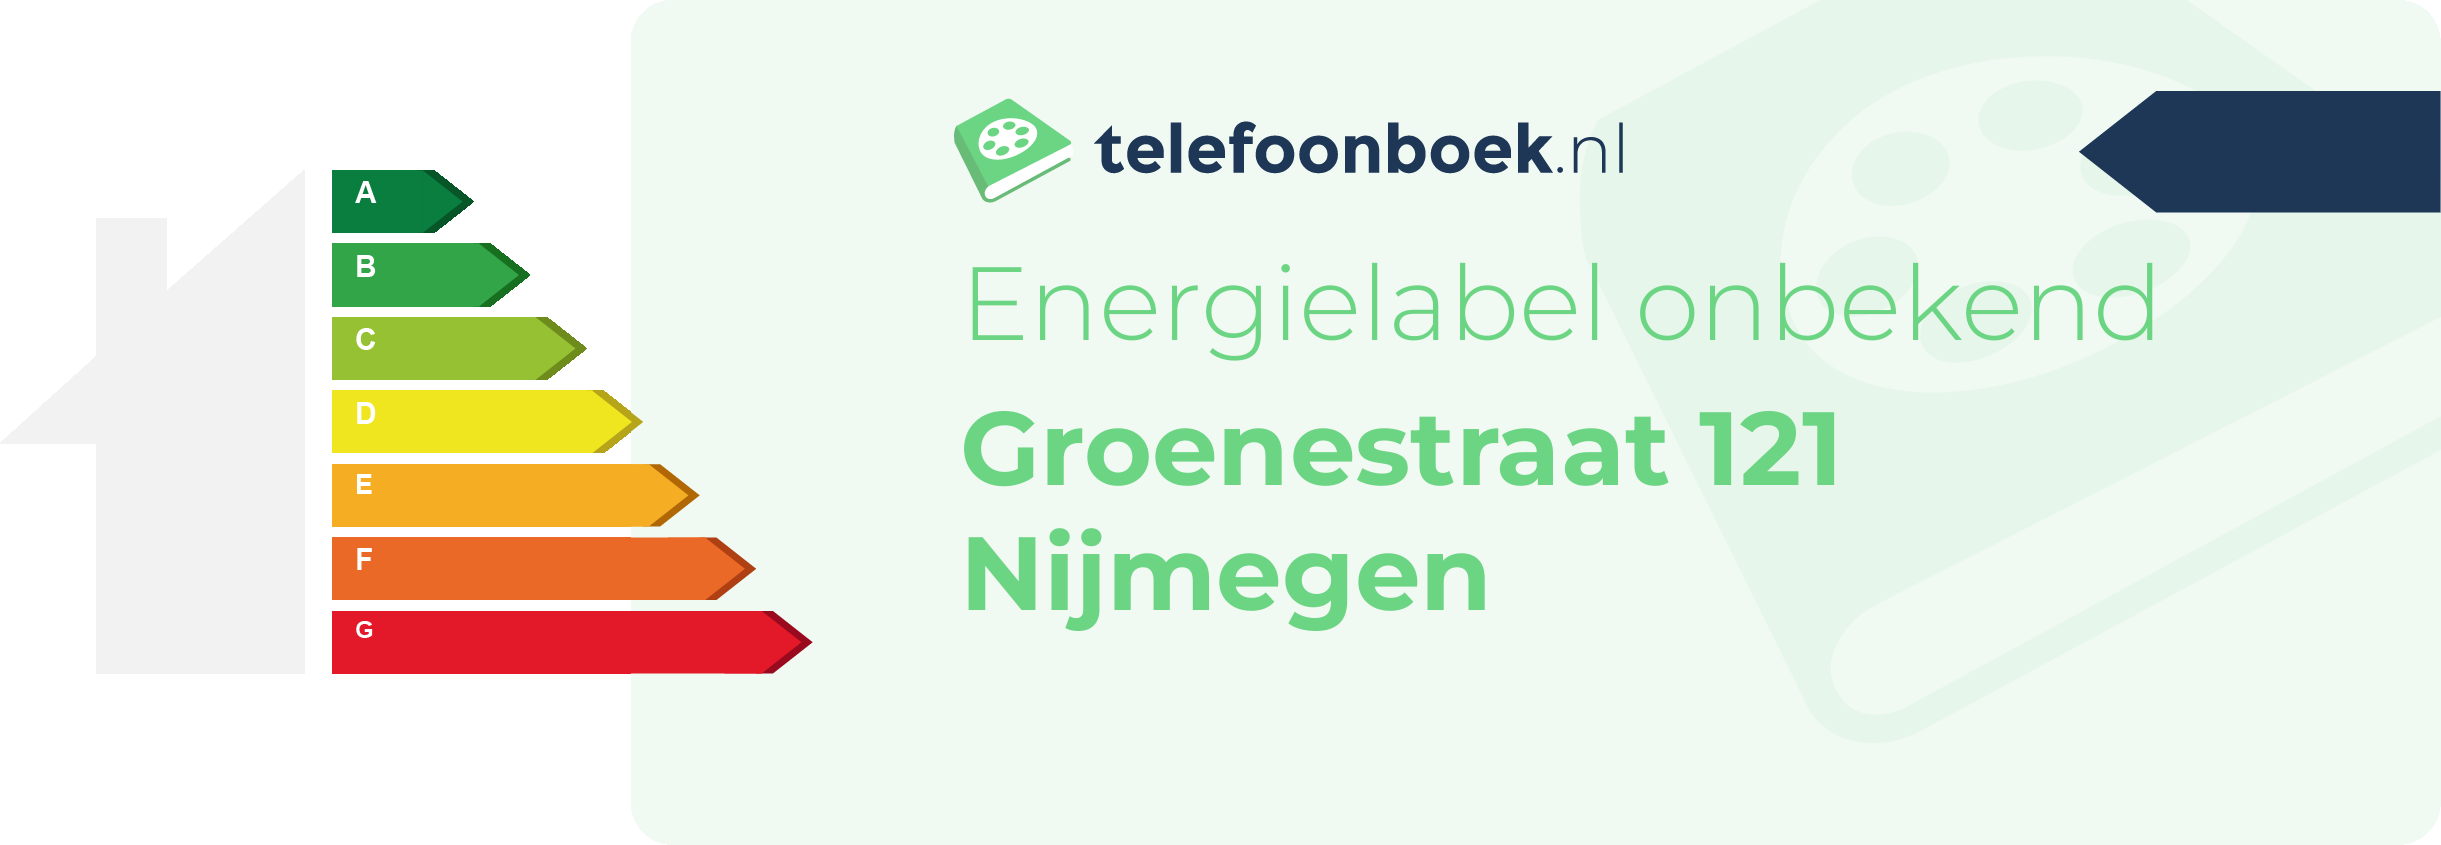 Energielabel Groenestraat 121 Nijmegen